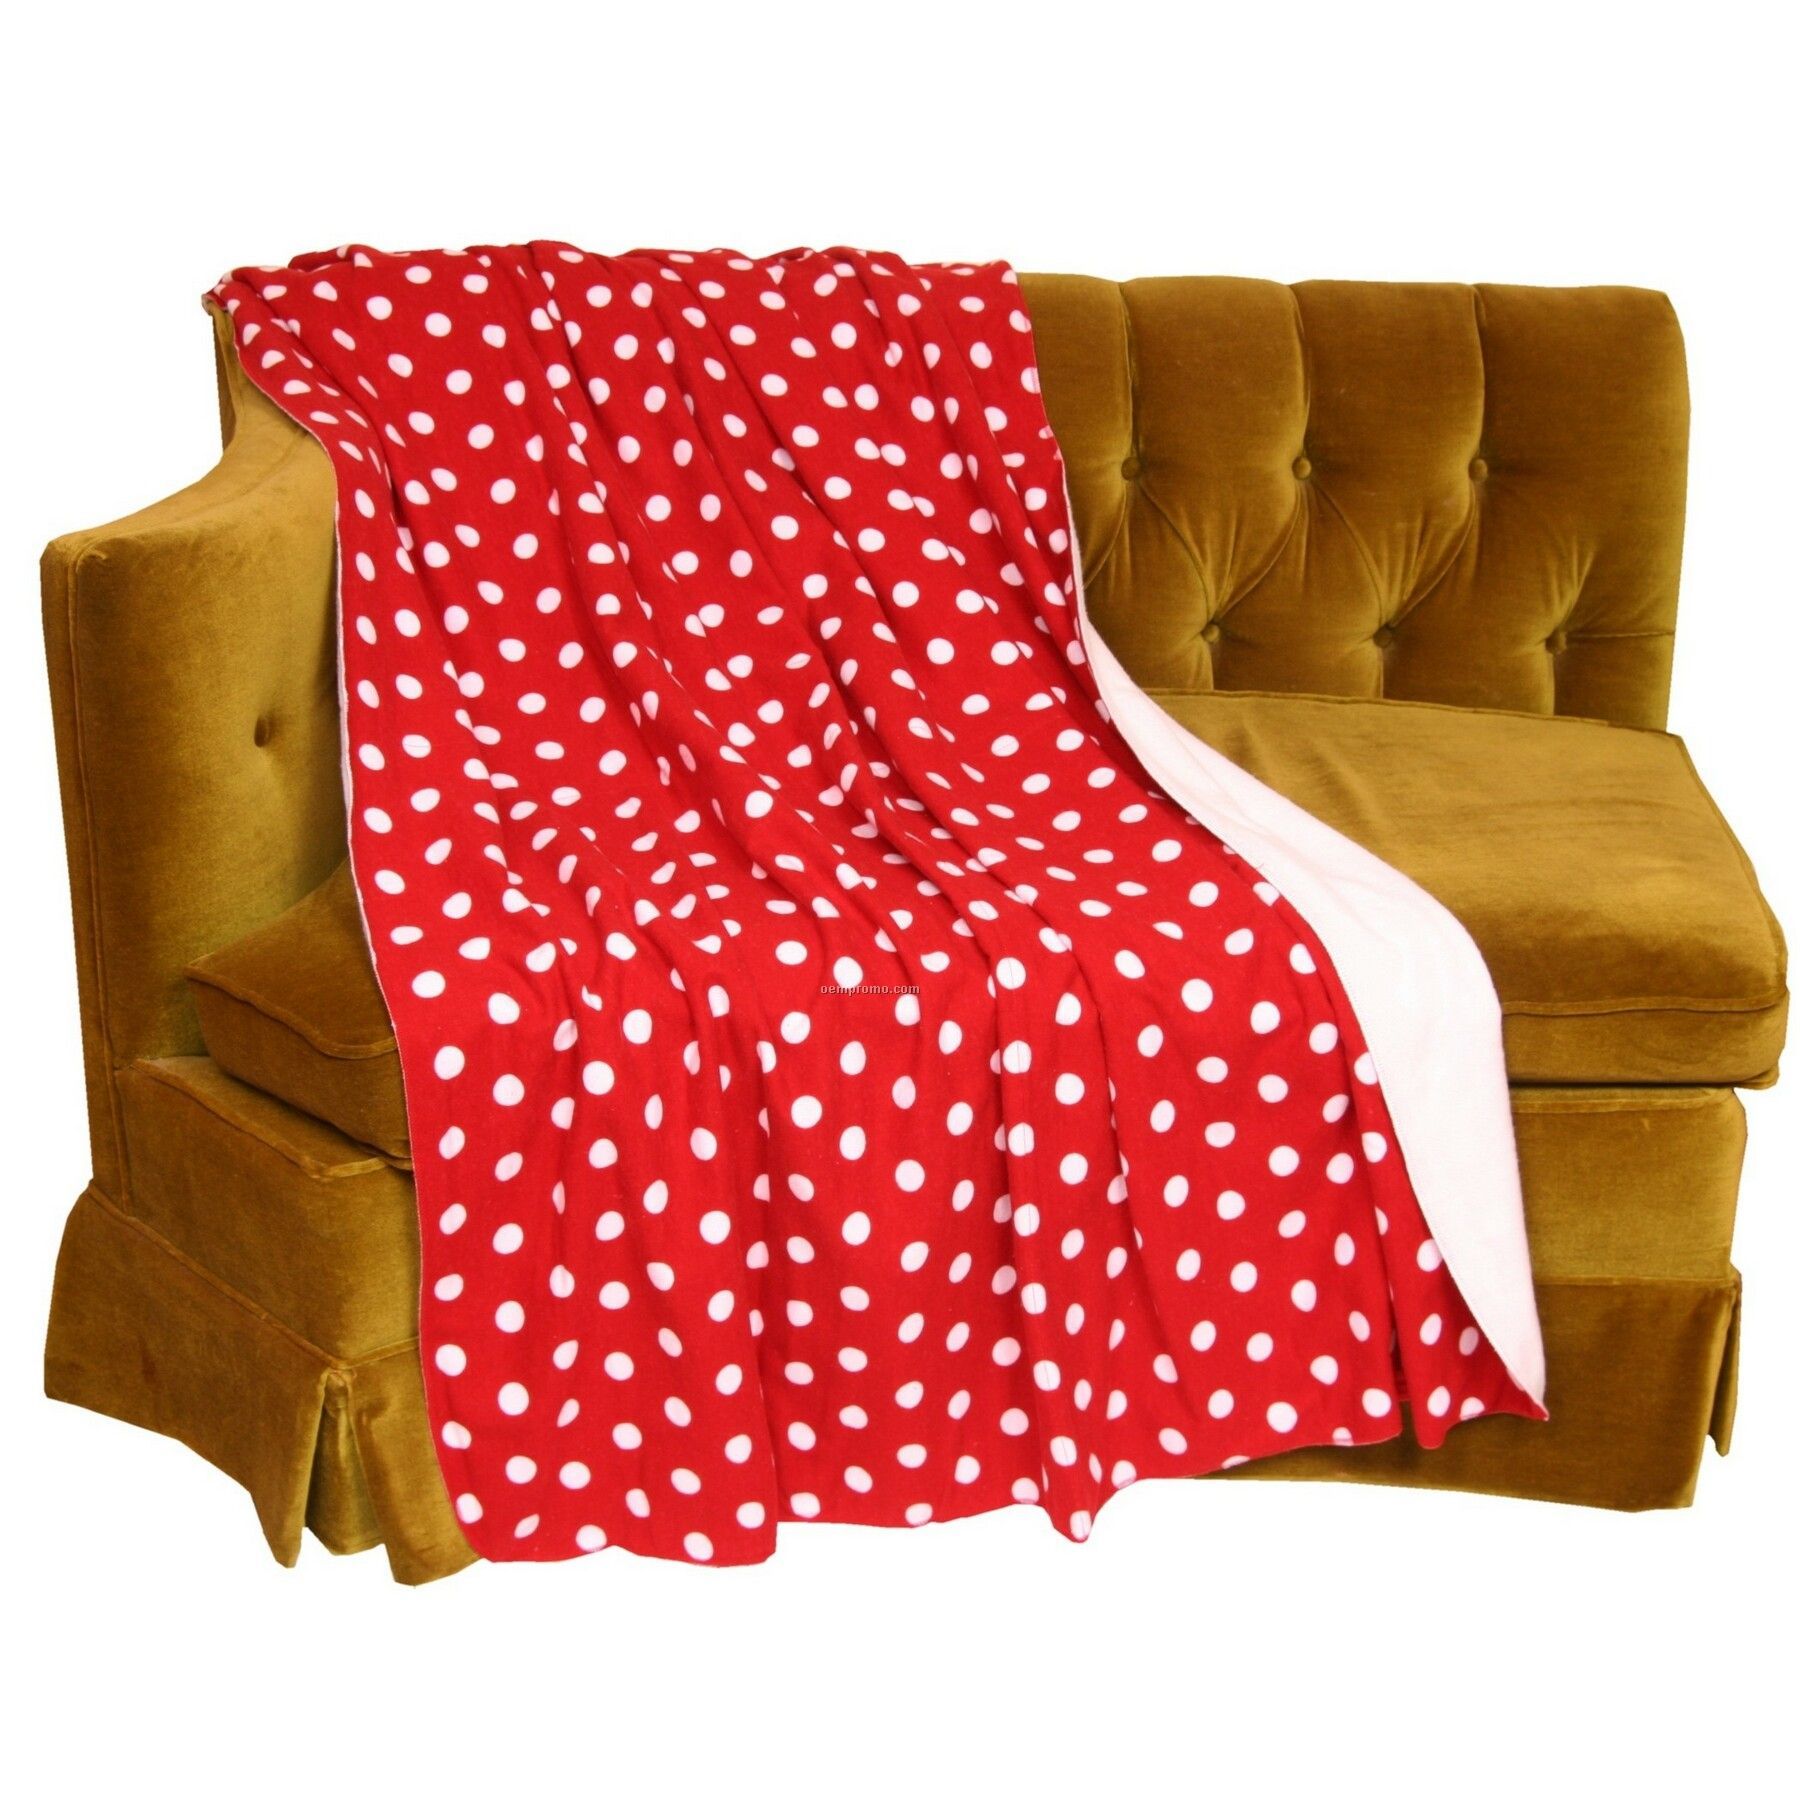 Red Hot Spot Spectator Blankets